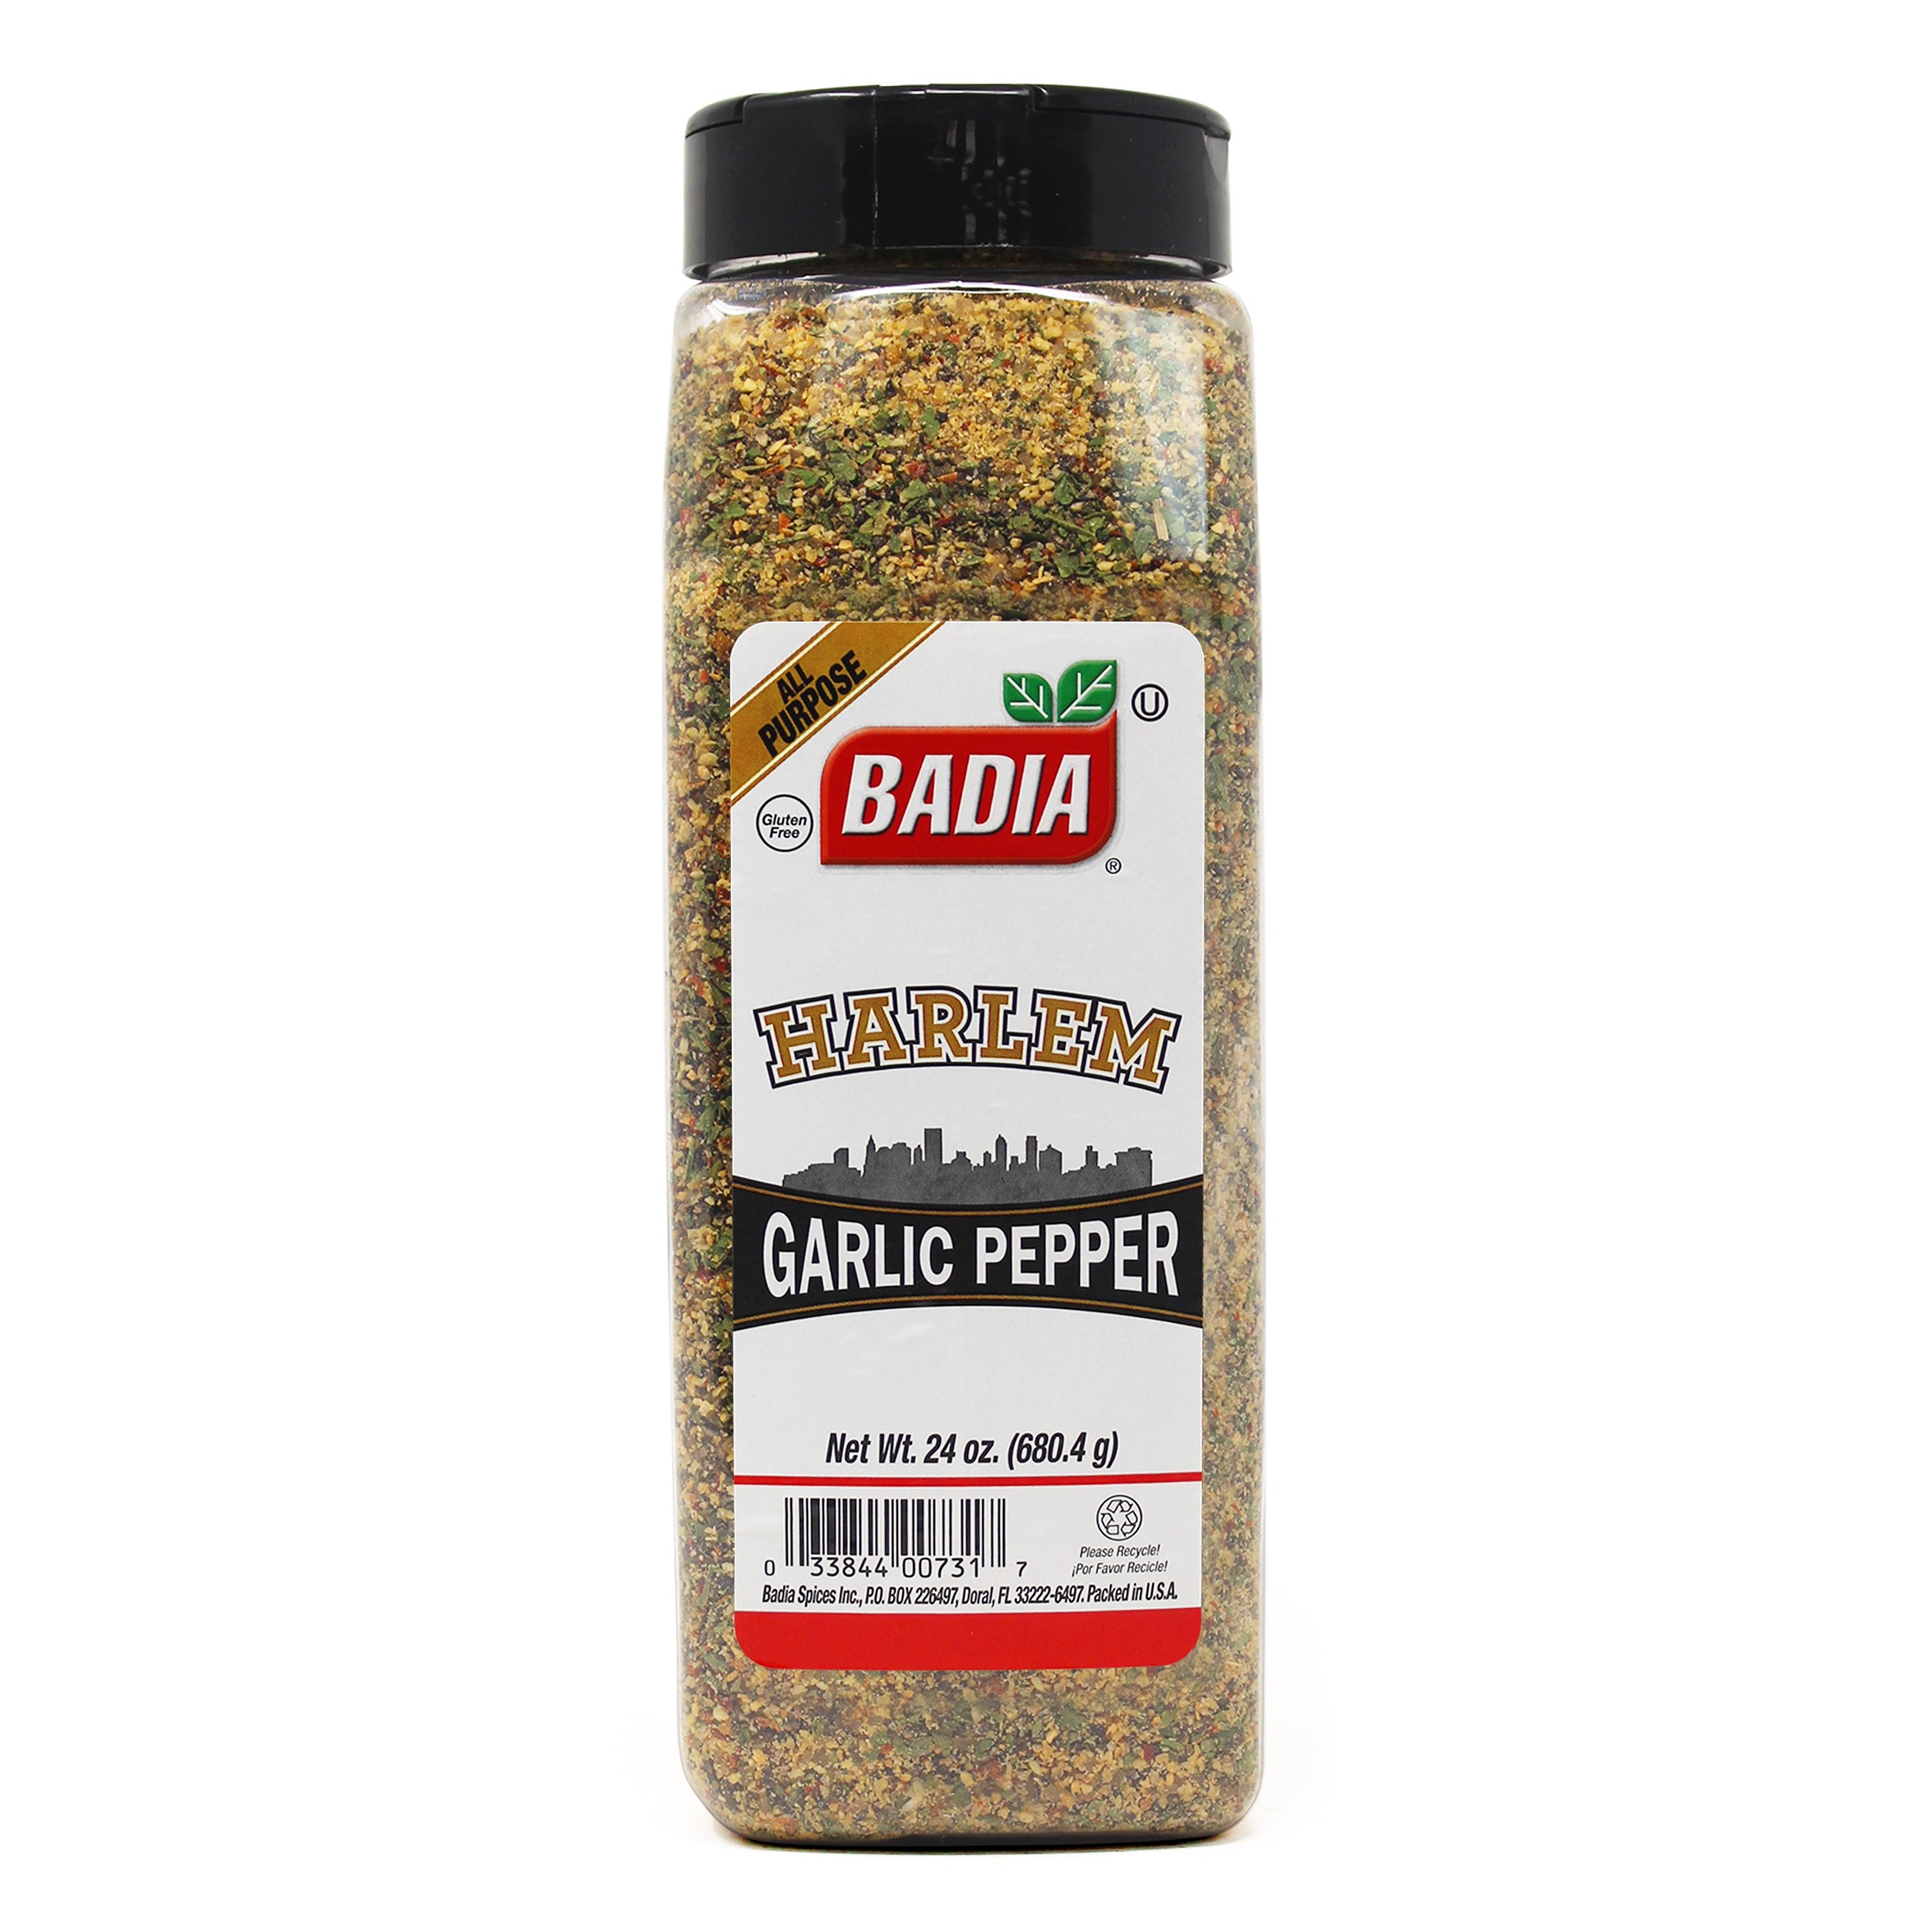 Grinder Black Pepper - Badia Spices